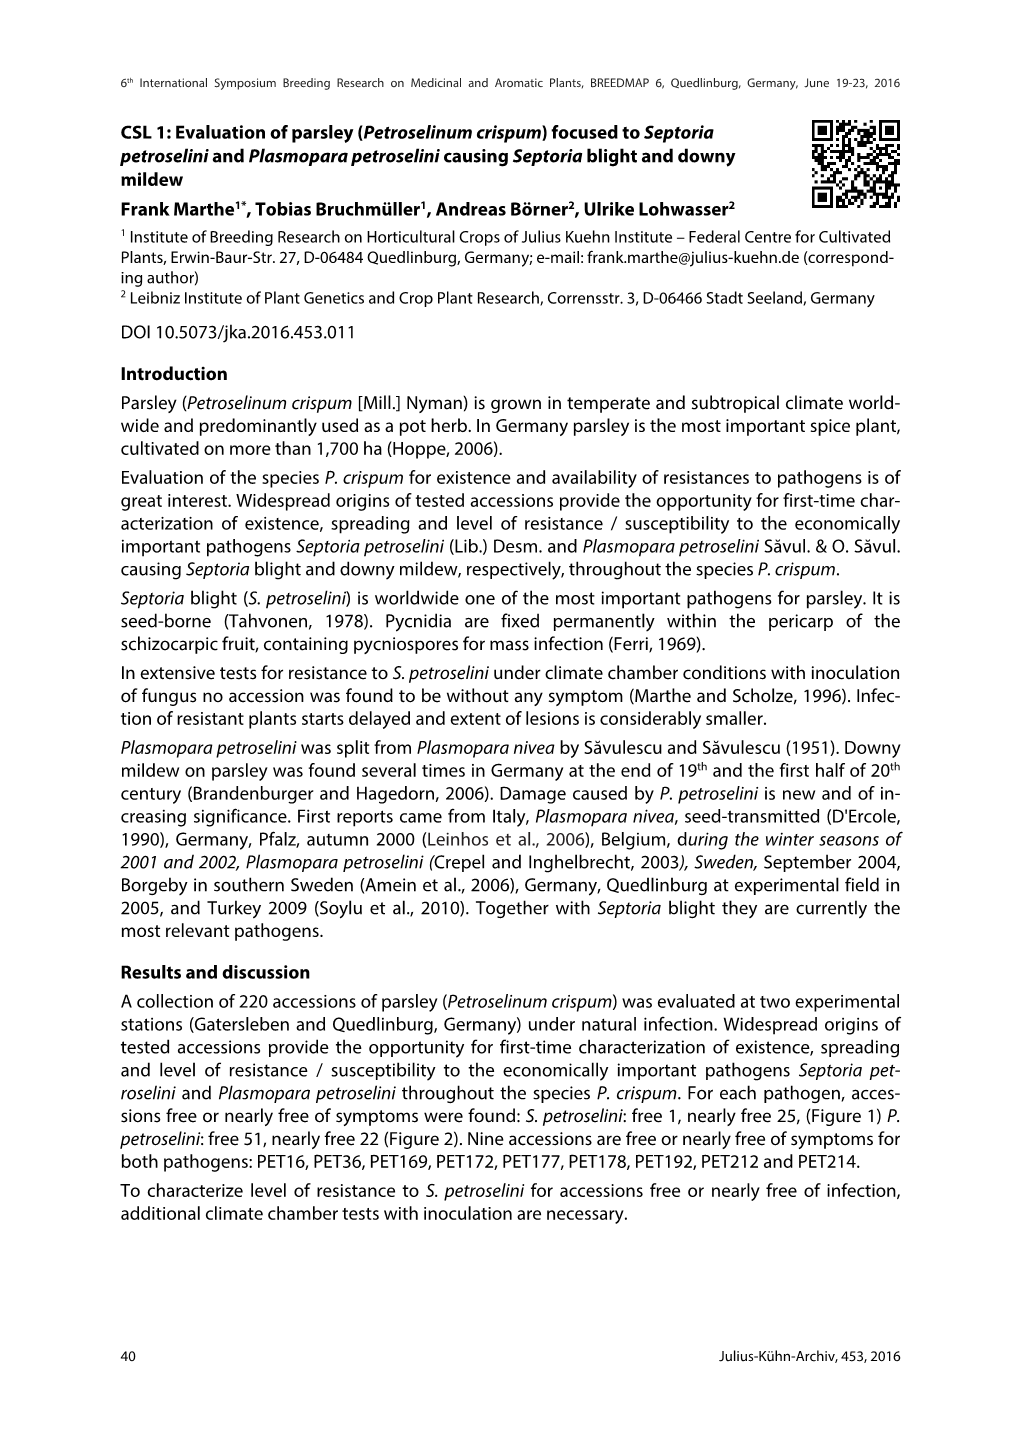 CSL 1: Evaluation of Parsley (Petroselinum Crispum) Focused to Septoria Petroselini and Plasmopara Petroselini Causing Septoria